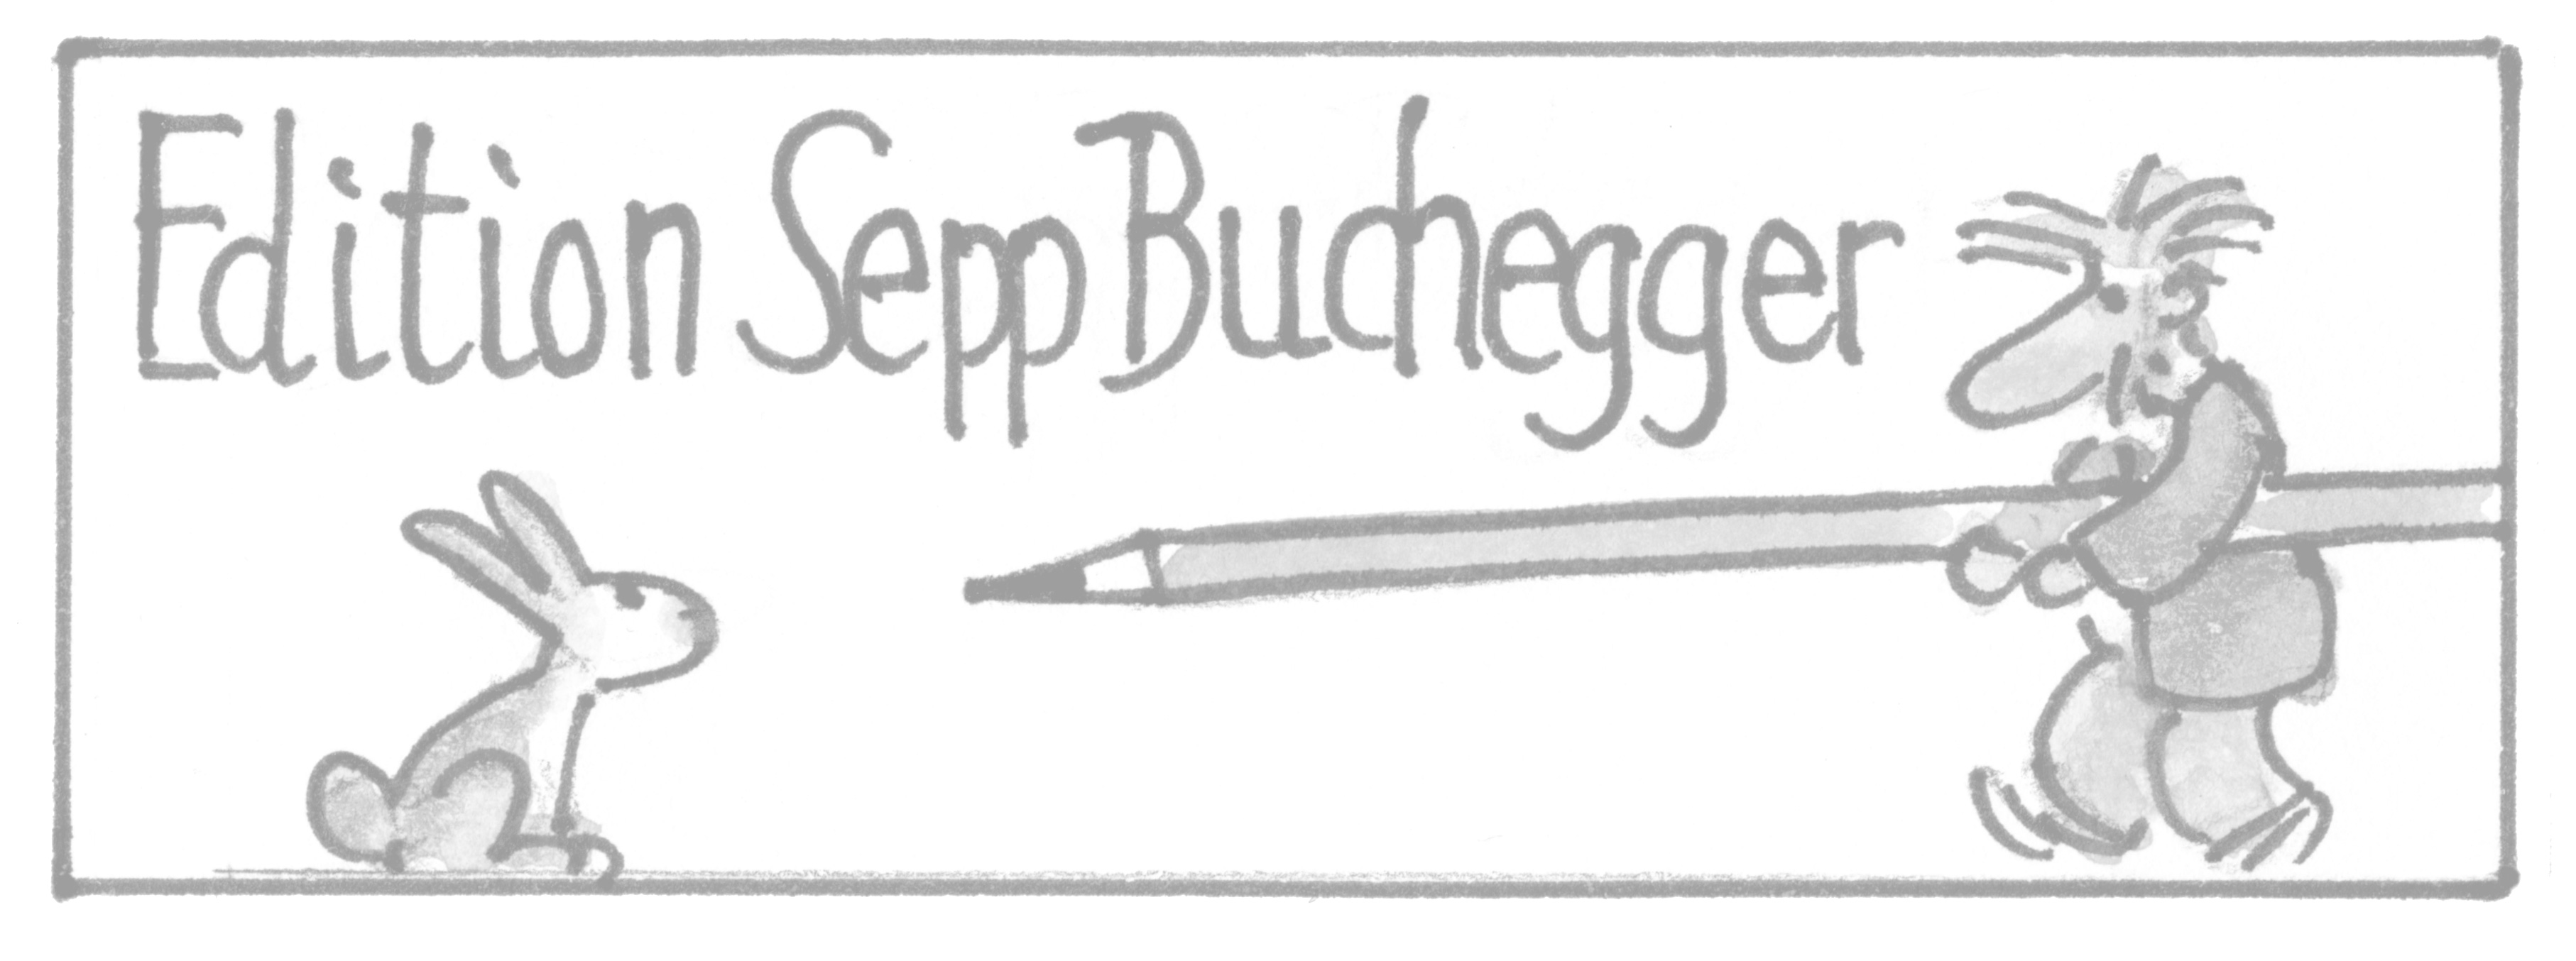 Edition Sepp Buchegger